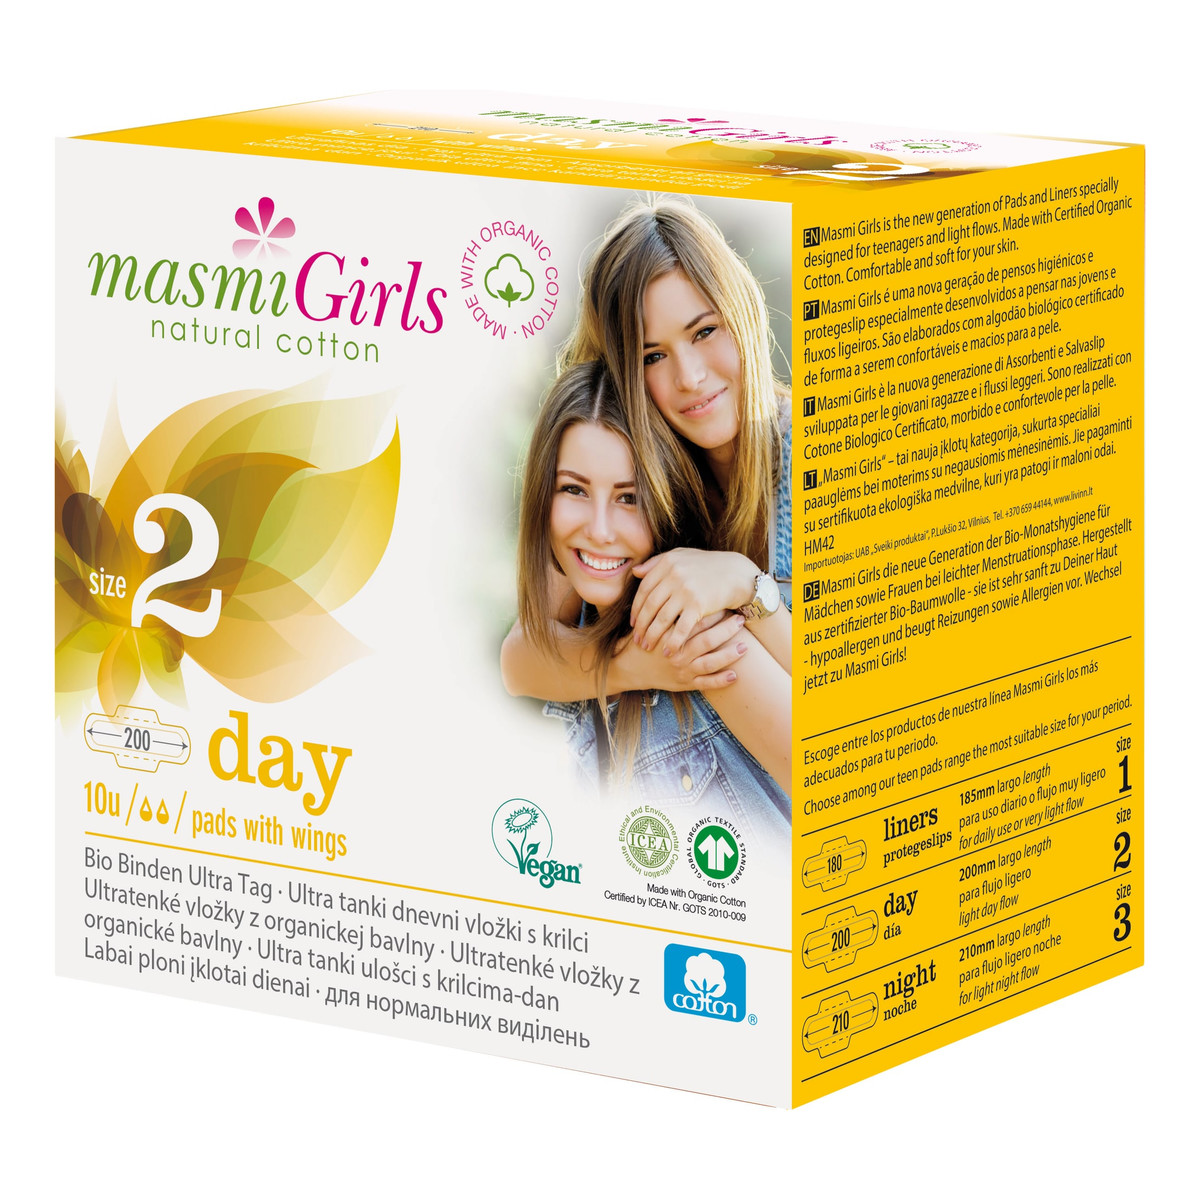 MASMI Girls podpaski na dzień 100% bawełny organicznej 10 szt